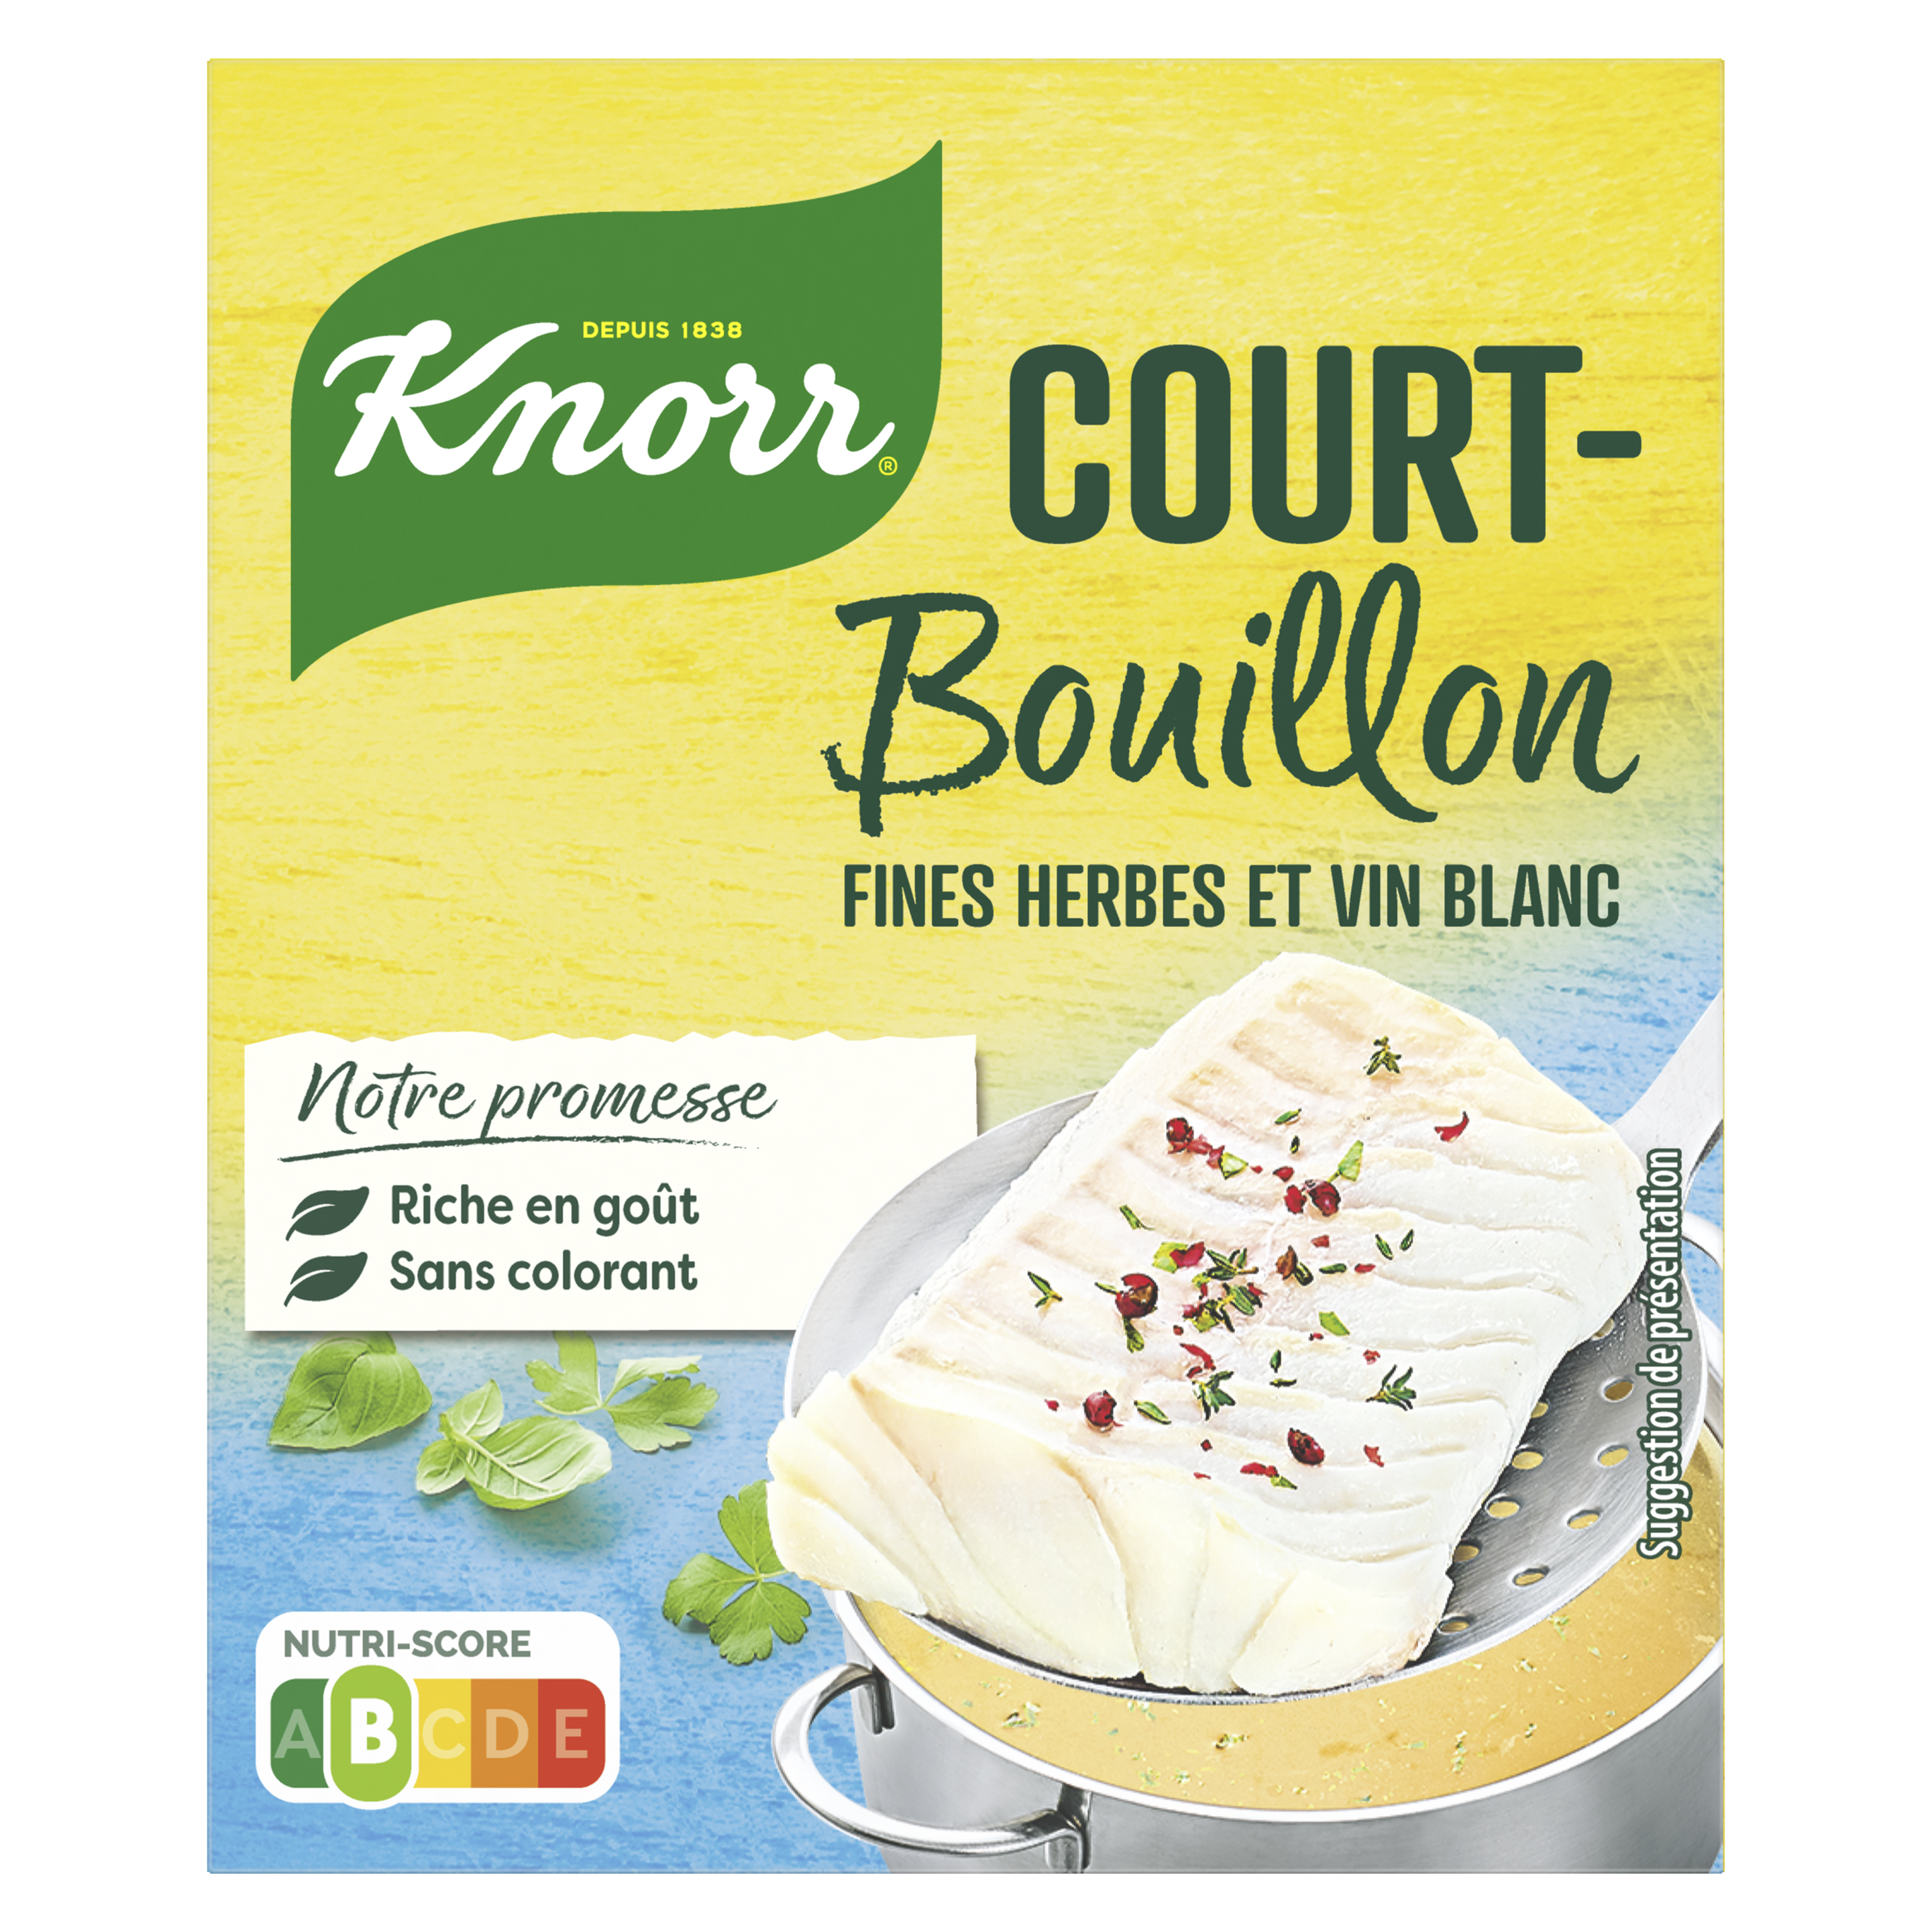 Court-Bouillon Fines Herbes et Vin Blanc